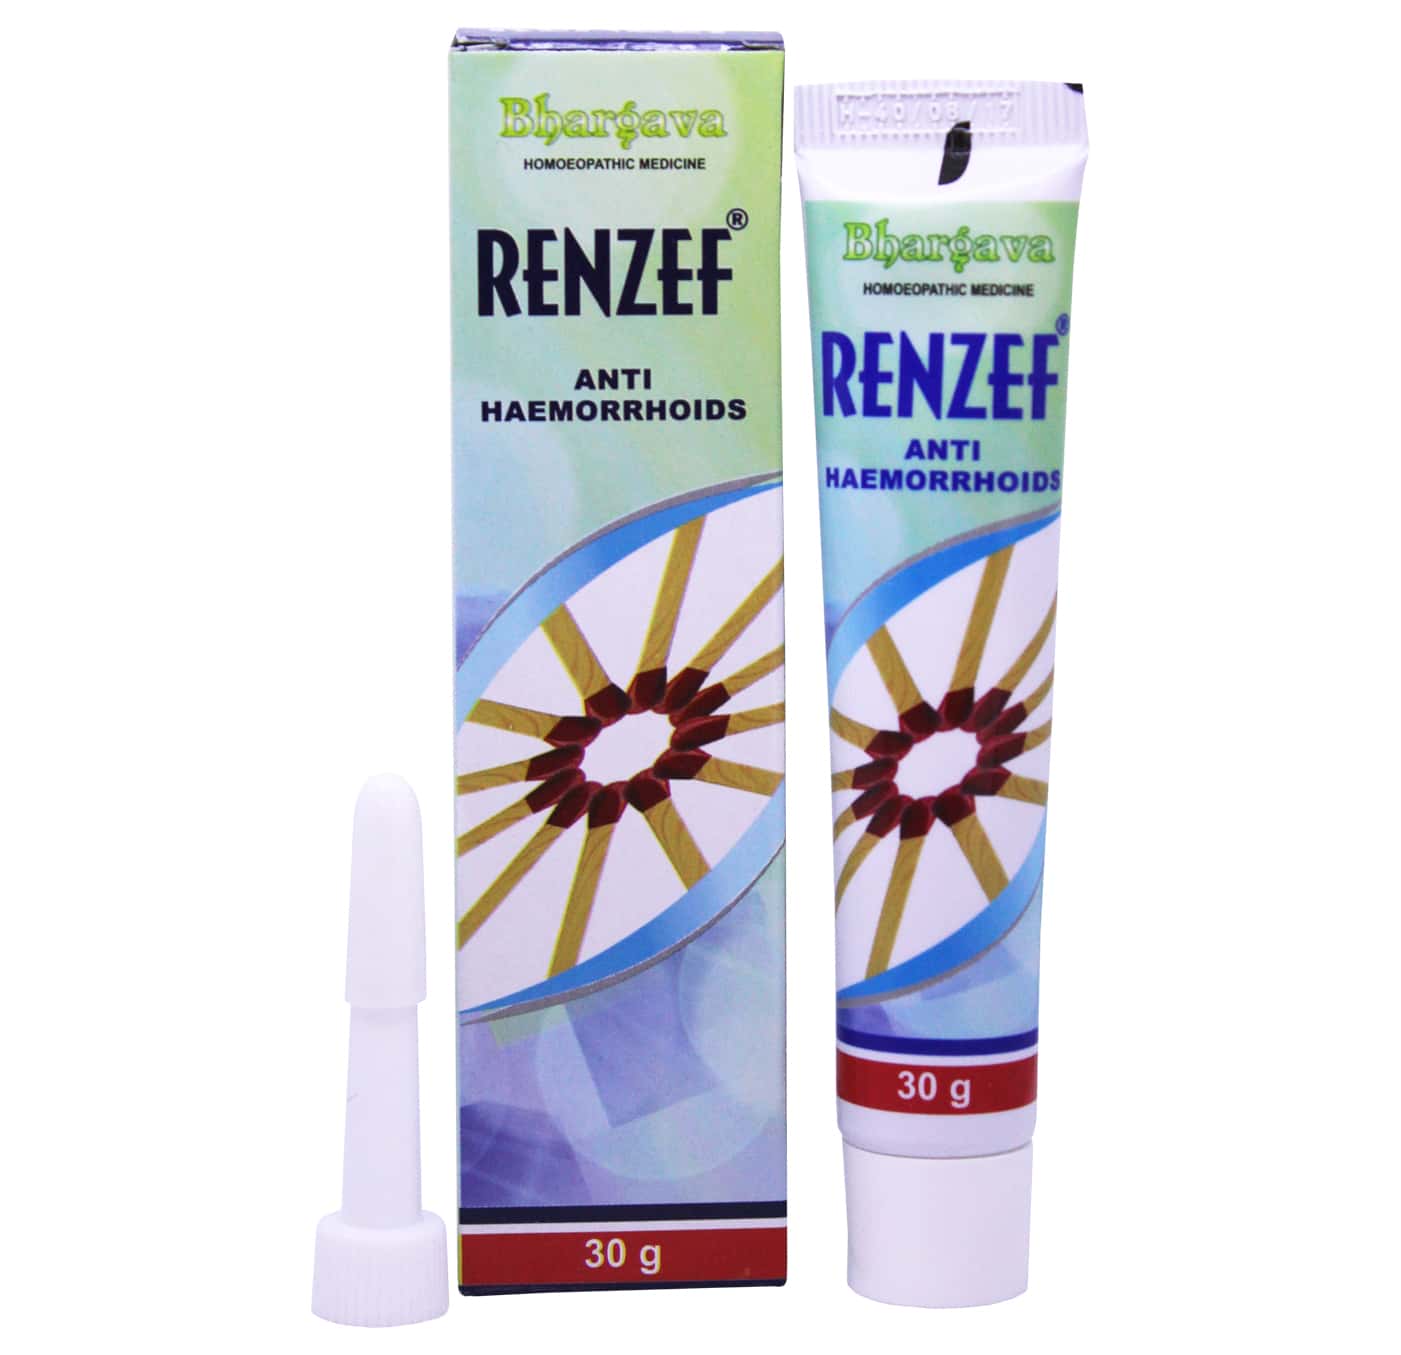 Renzef Cream